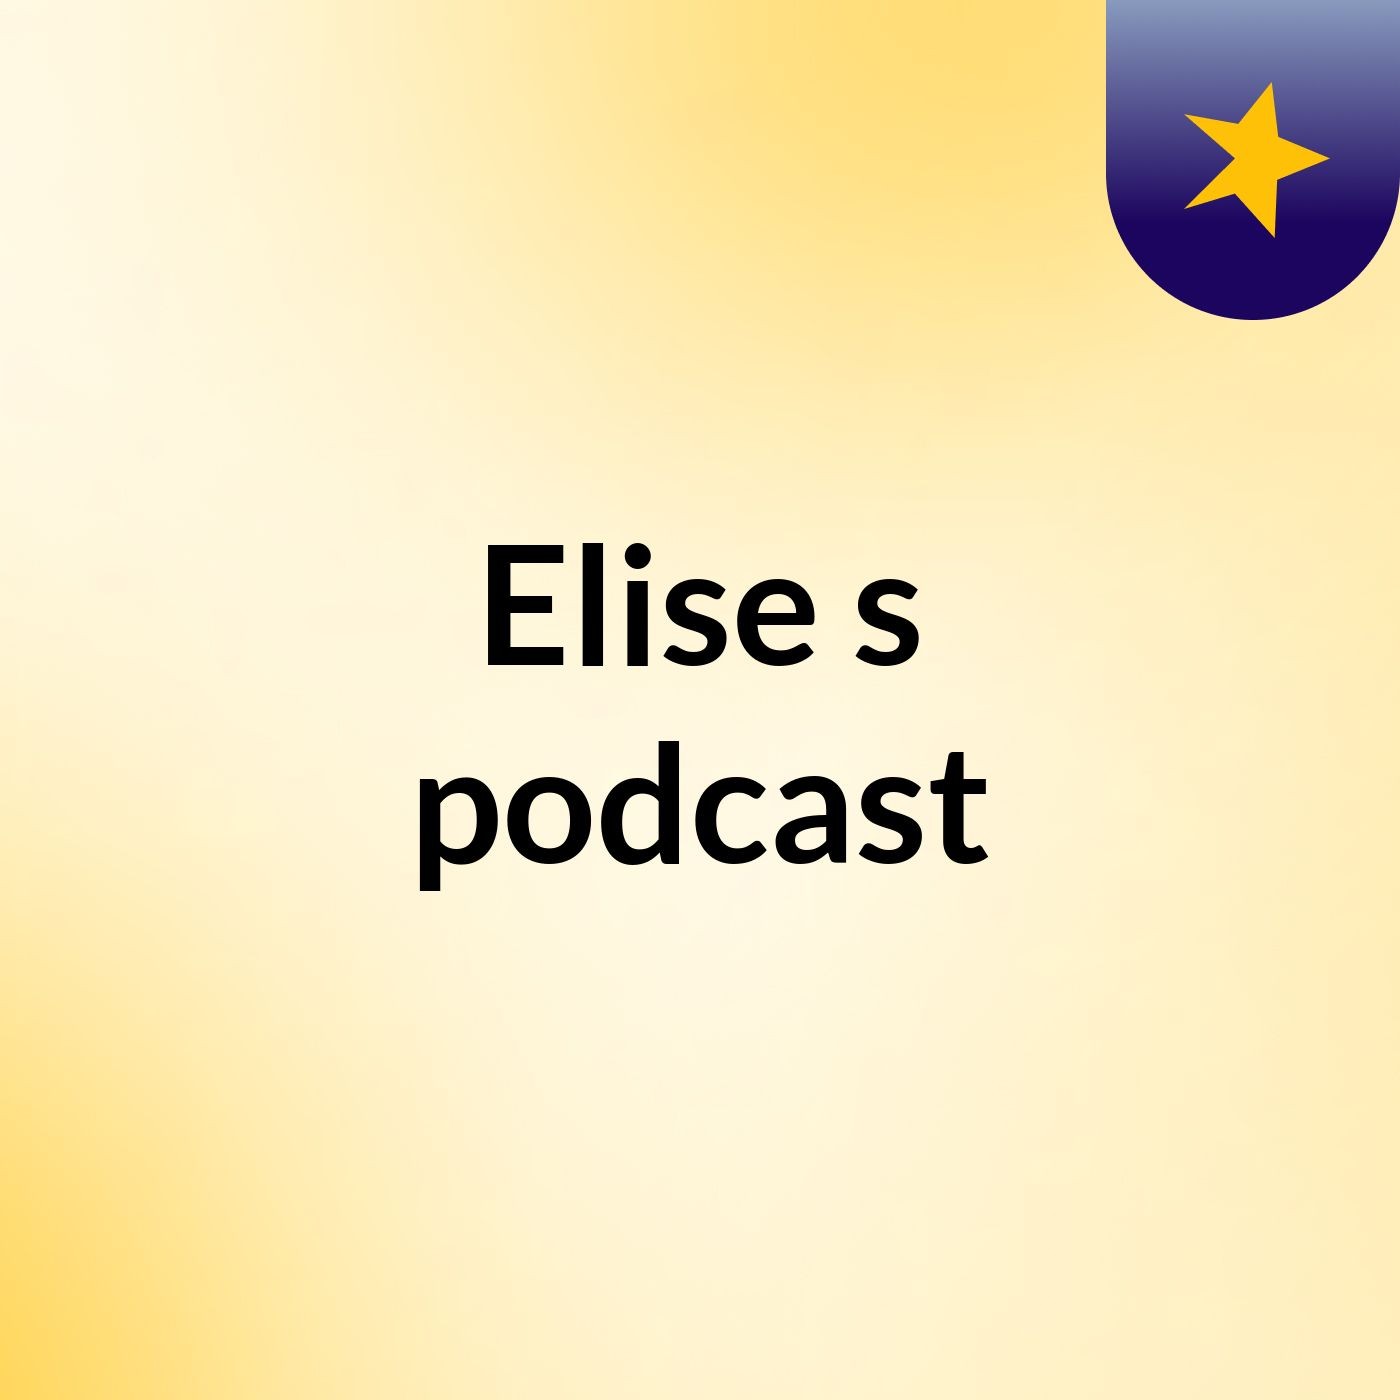 Elise's podcast